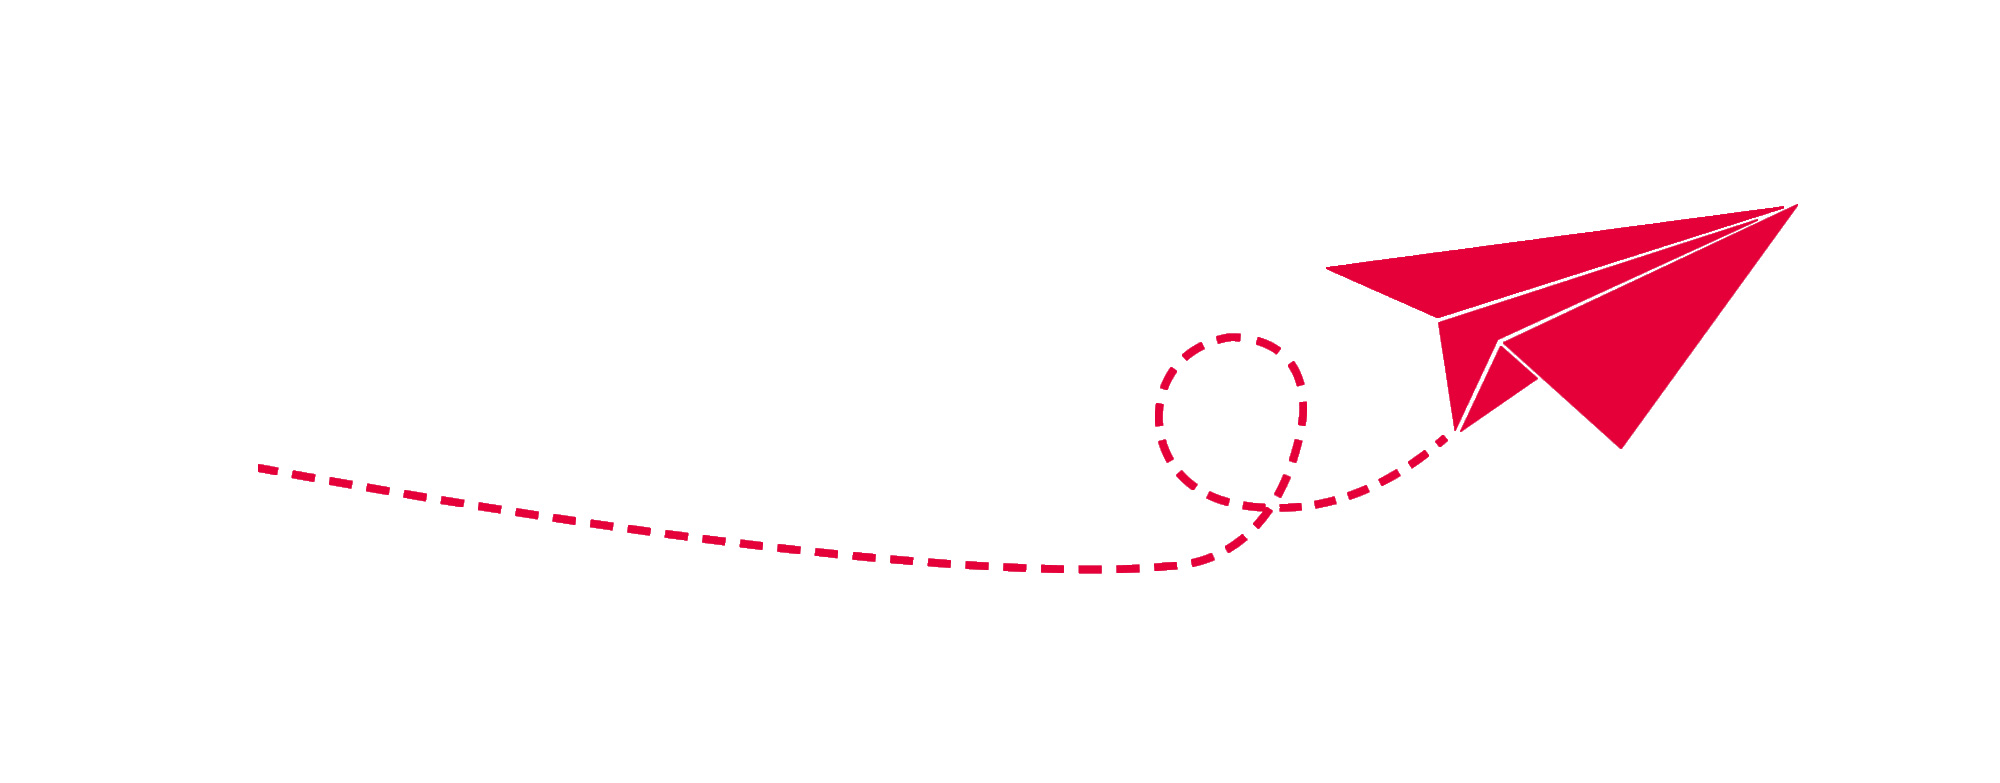 Weißer Hintergrund mit Zeichnung von rotem Papierflieger.